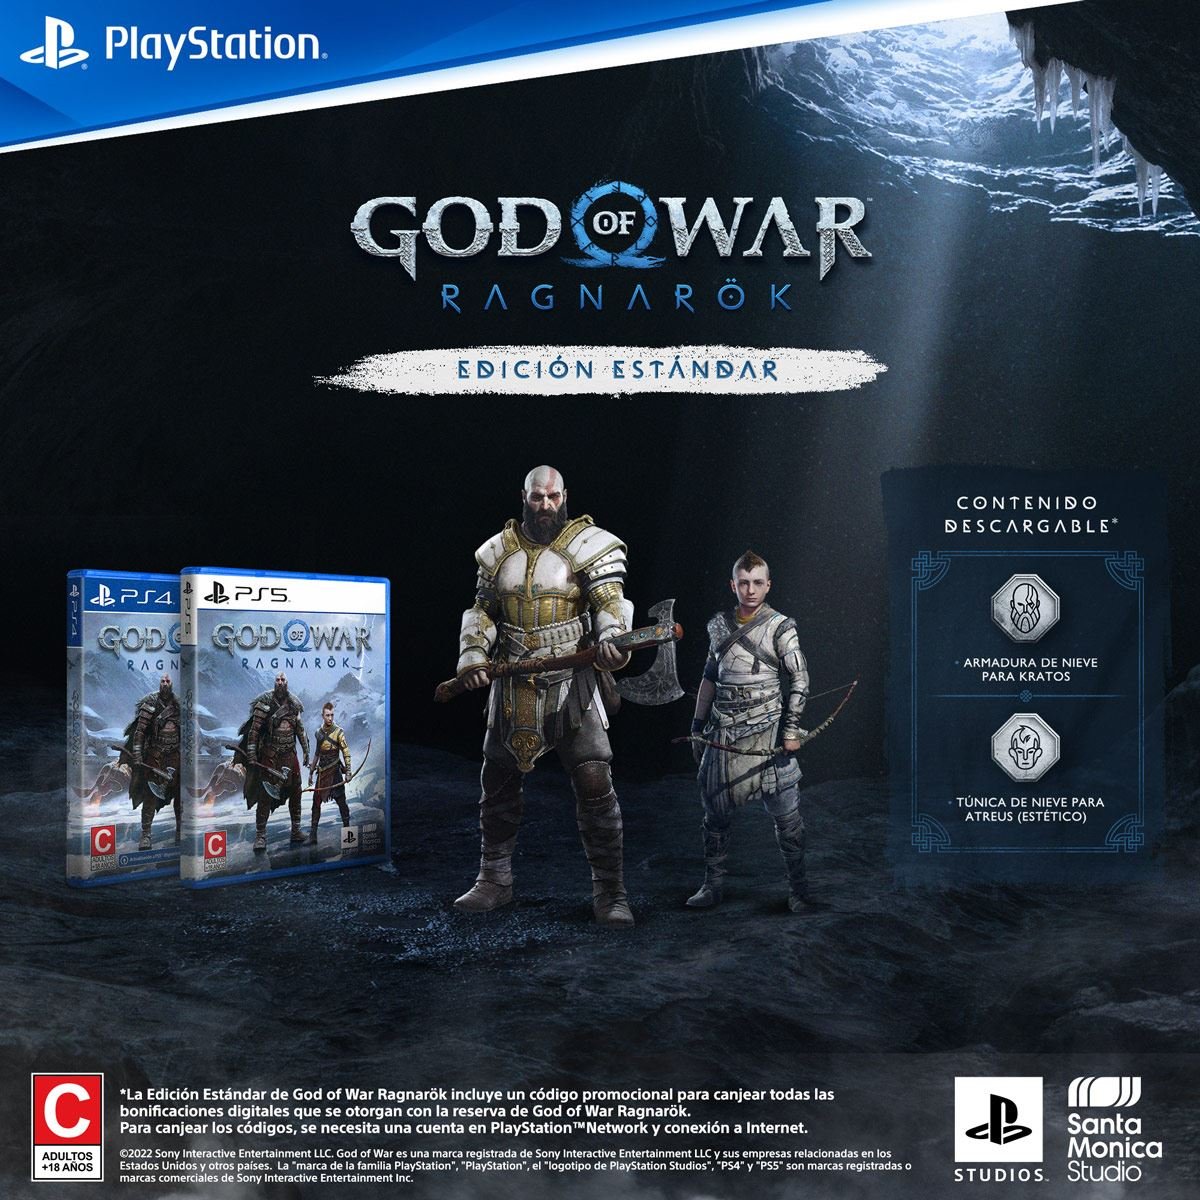 God of War Ragnarok - PlayStation 5